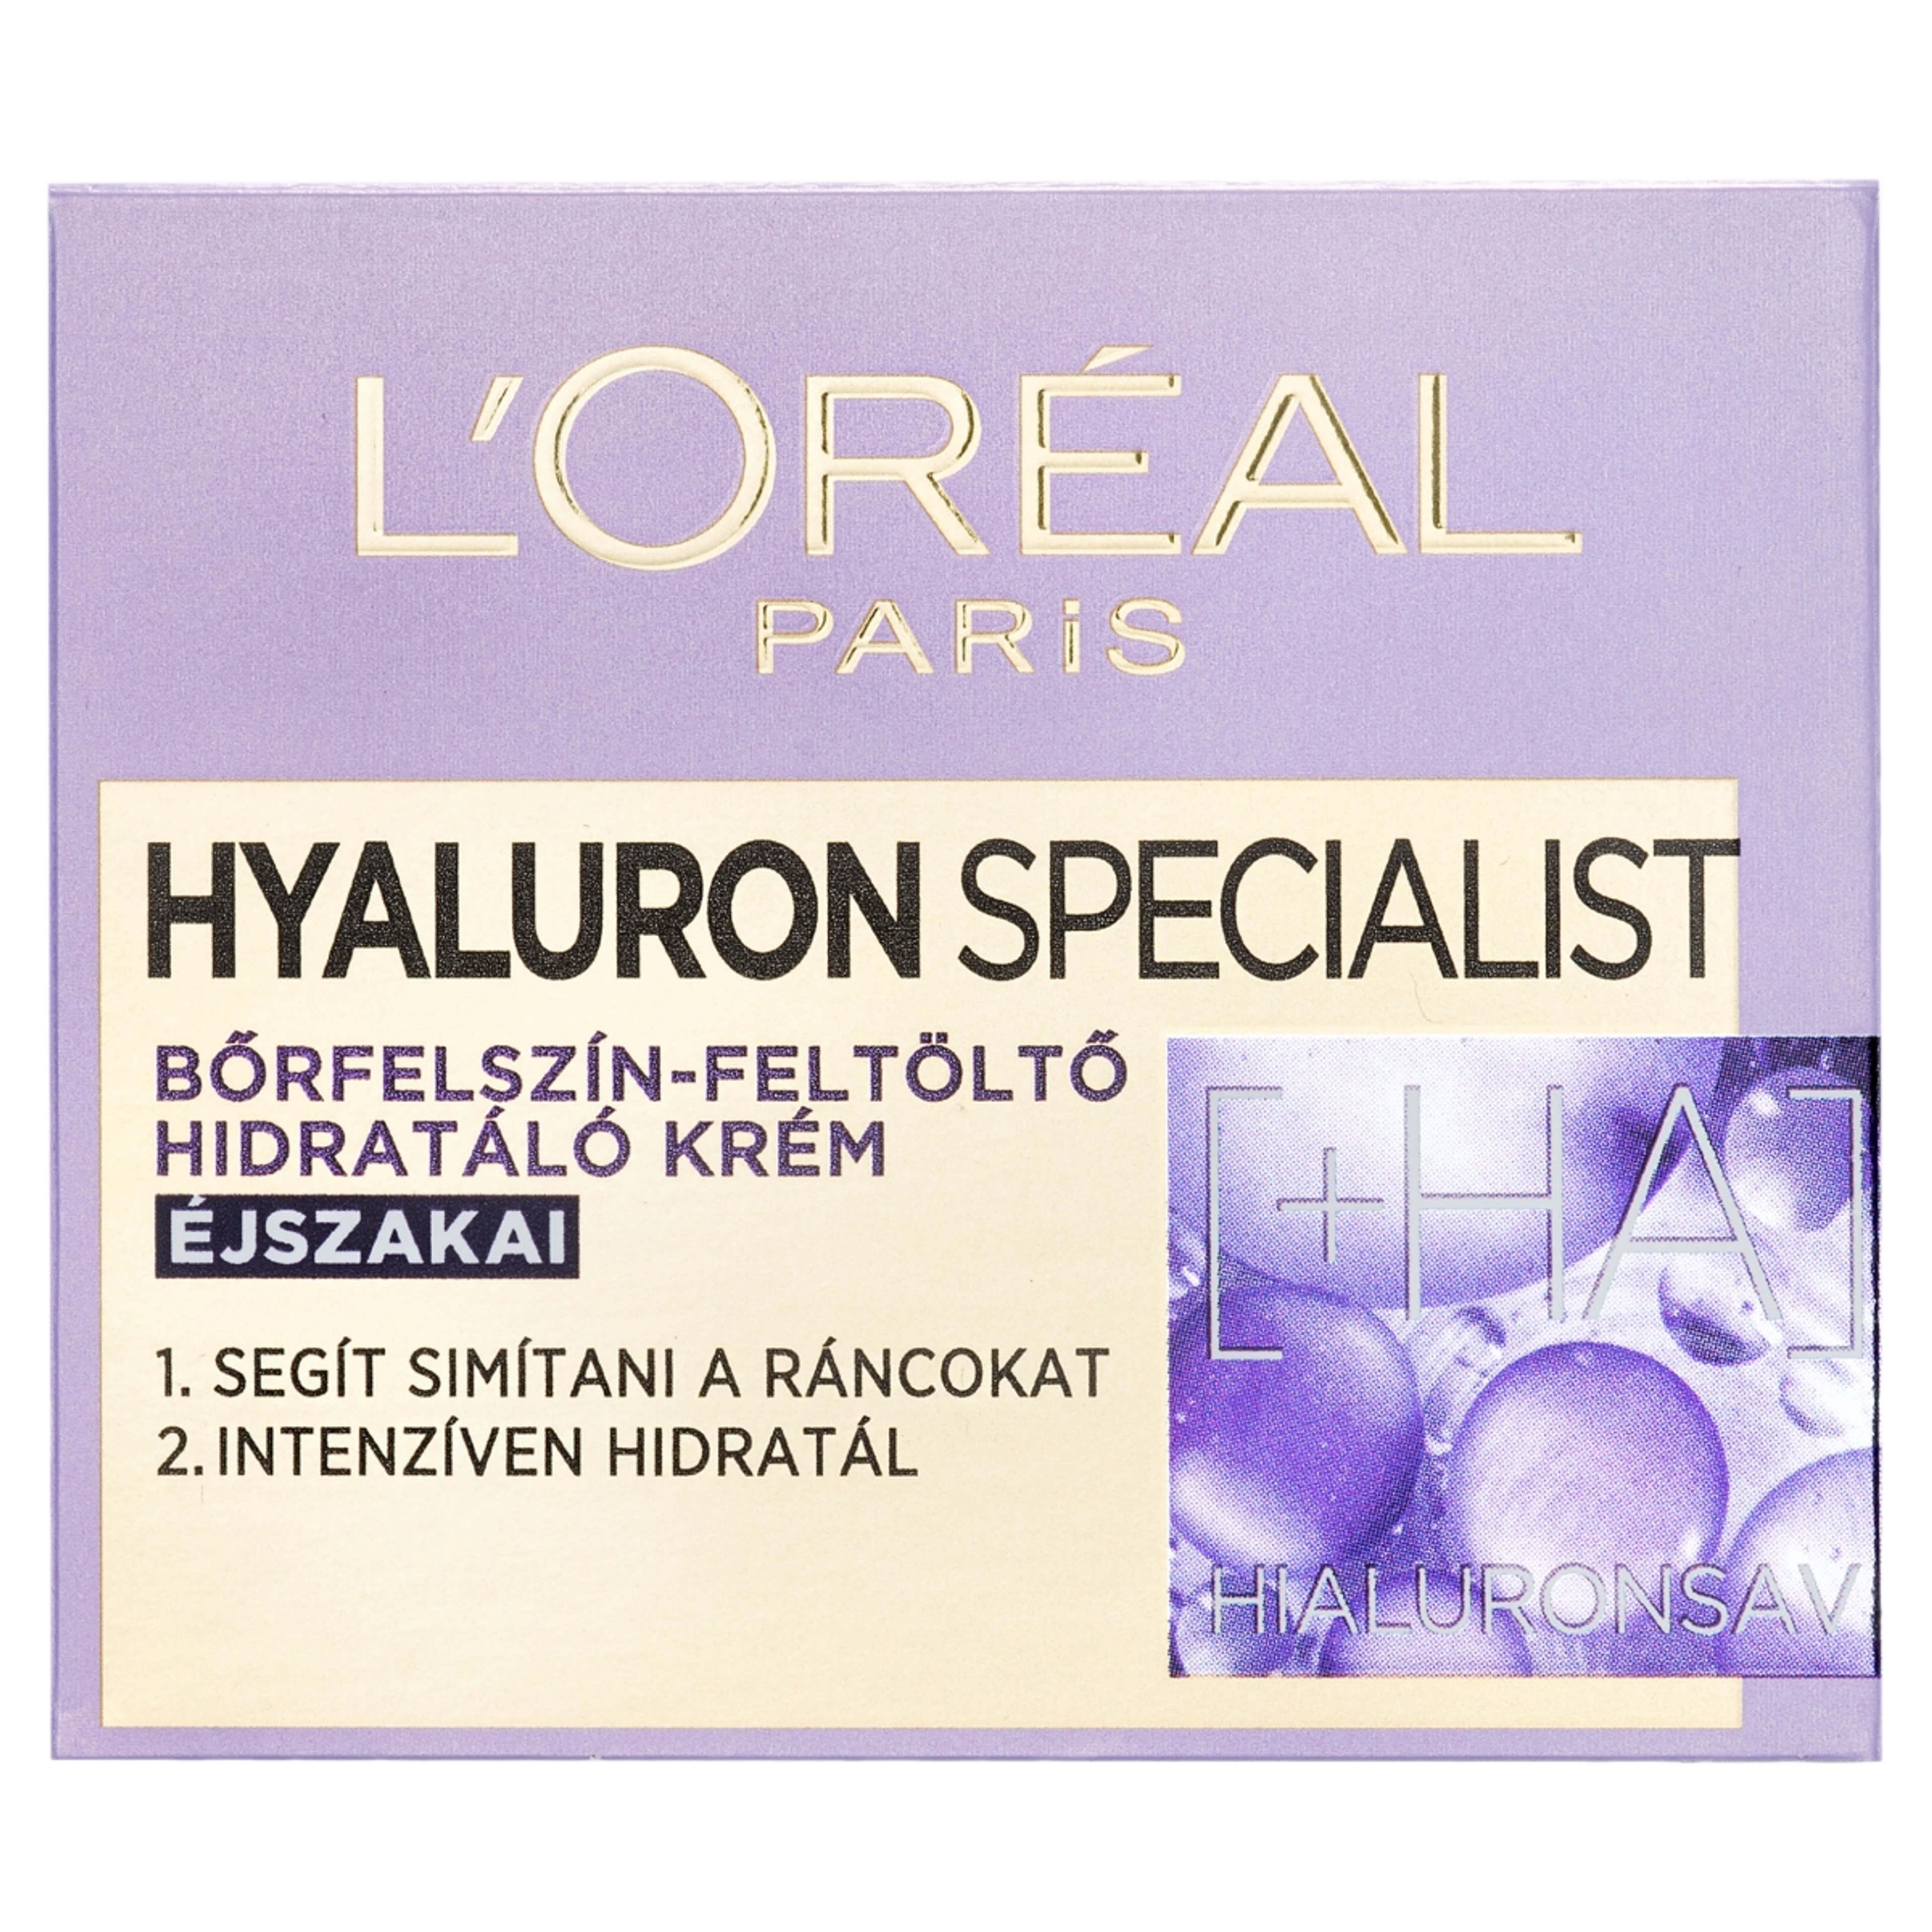 L'Oréal Paris Hyaluron Specialist éjszakai arckrém - 50 ml